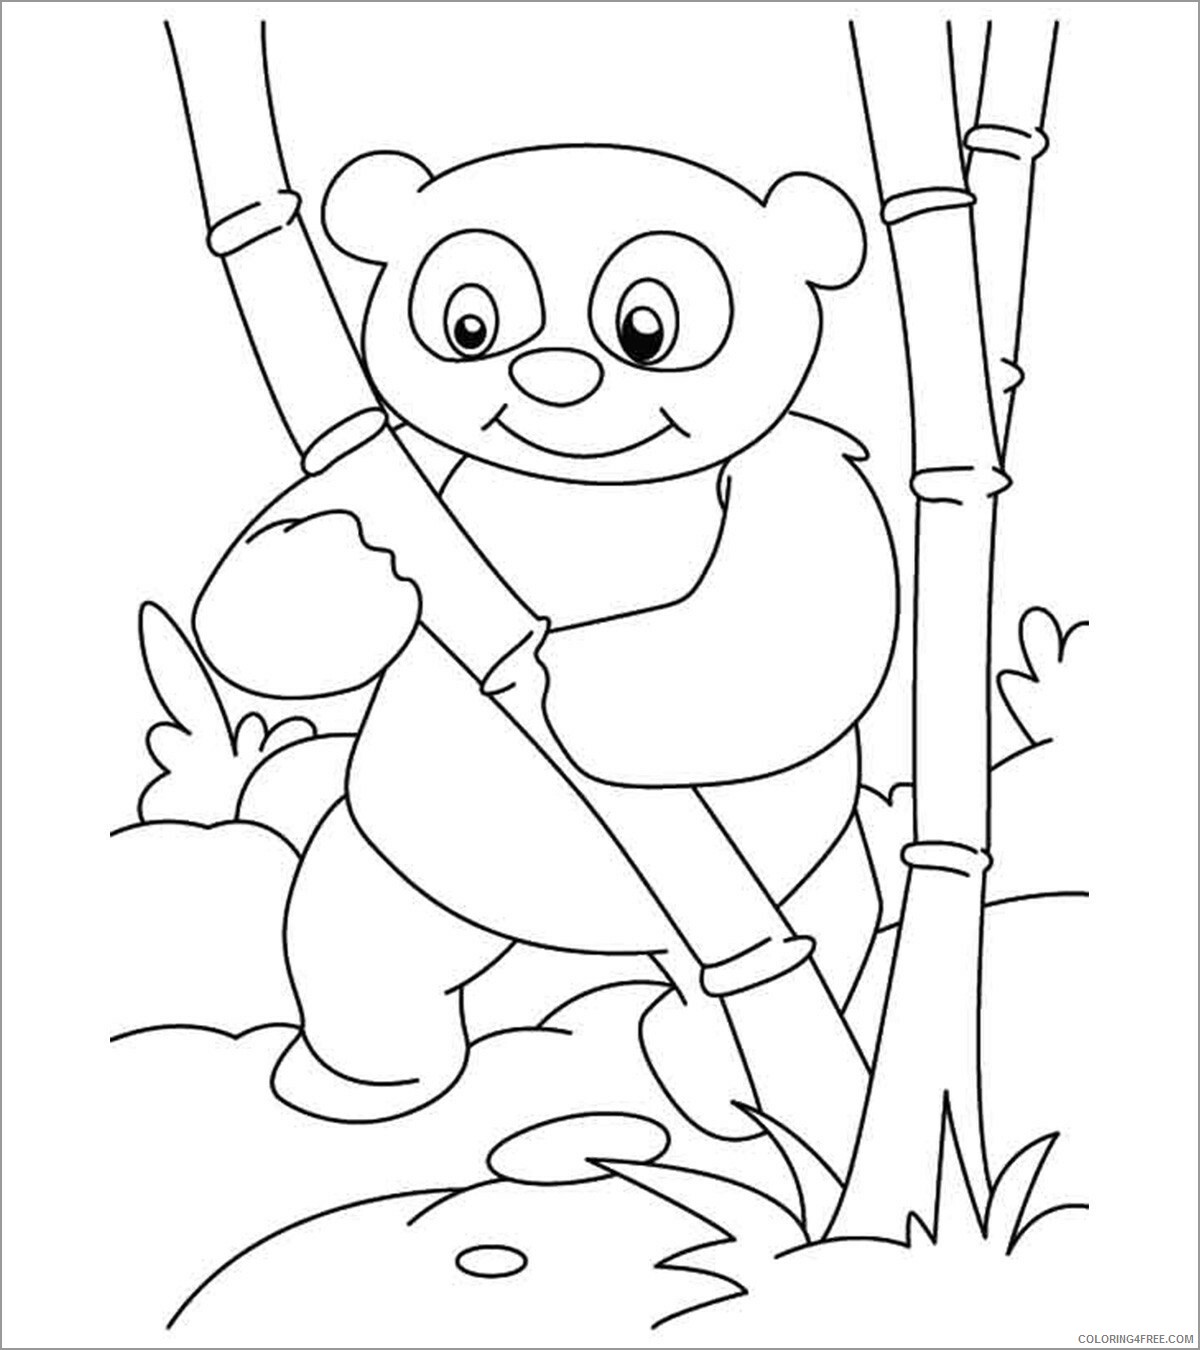 Panda Coloring Pages Animal Printable Sheets panda and bamboo 2021 3685 Coloring4free